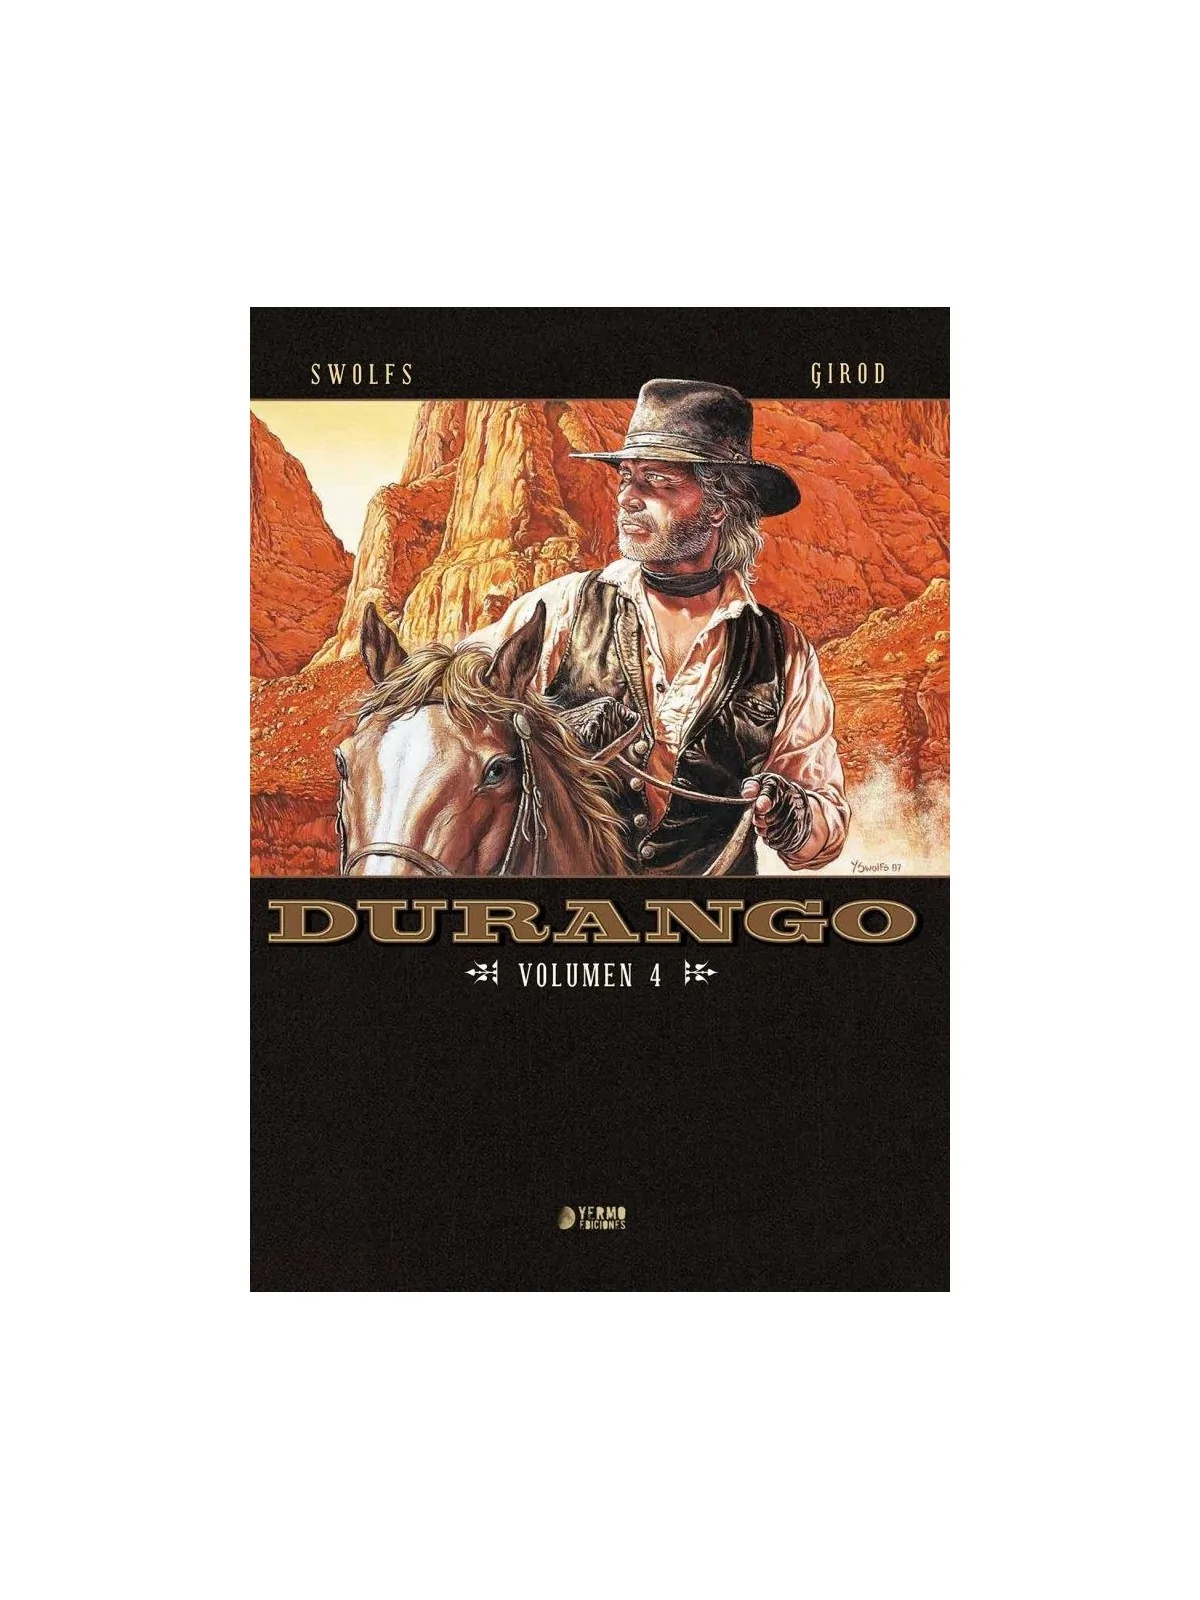 Comprar Durango Vol. 4 barato al mejor precio 38,00 € de Yermo Edicion